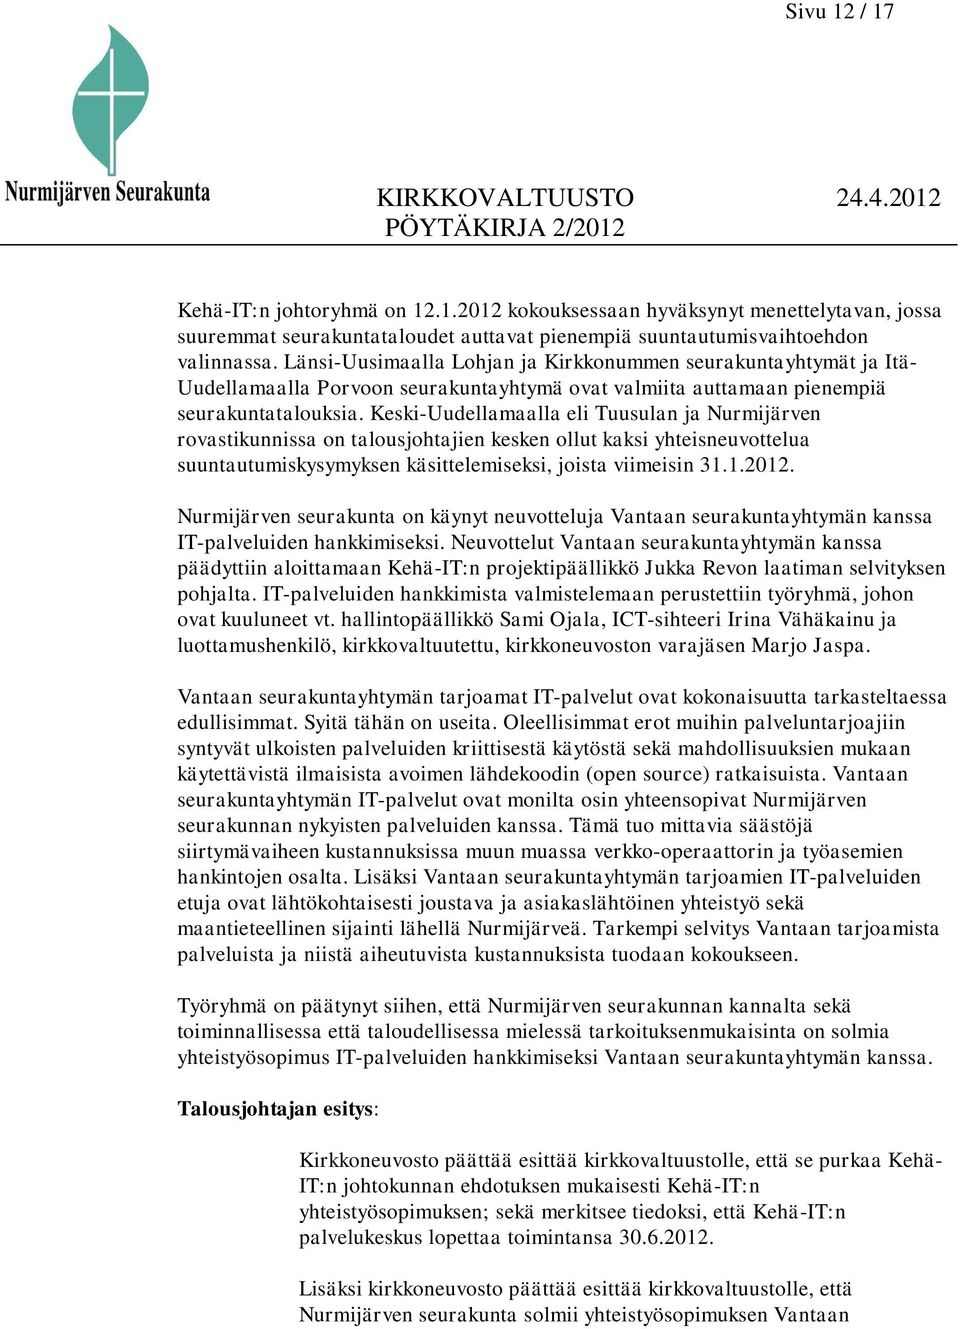 Keski-Uudellamaalla eli Tuusulan ja Nurmijärven rovastikunnissa on talousjohtajien kesken ollut kaksi yhteisneuvottelua suuntautumiskysymyksen käsittelemiseksi, joista viimeisin 31.1.2012.